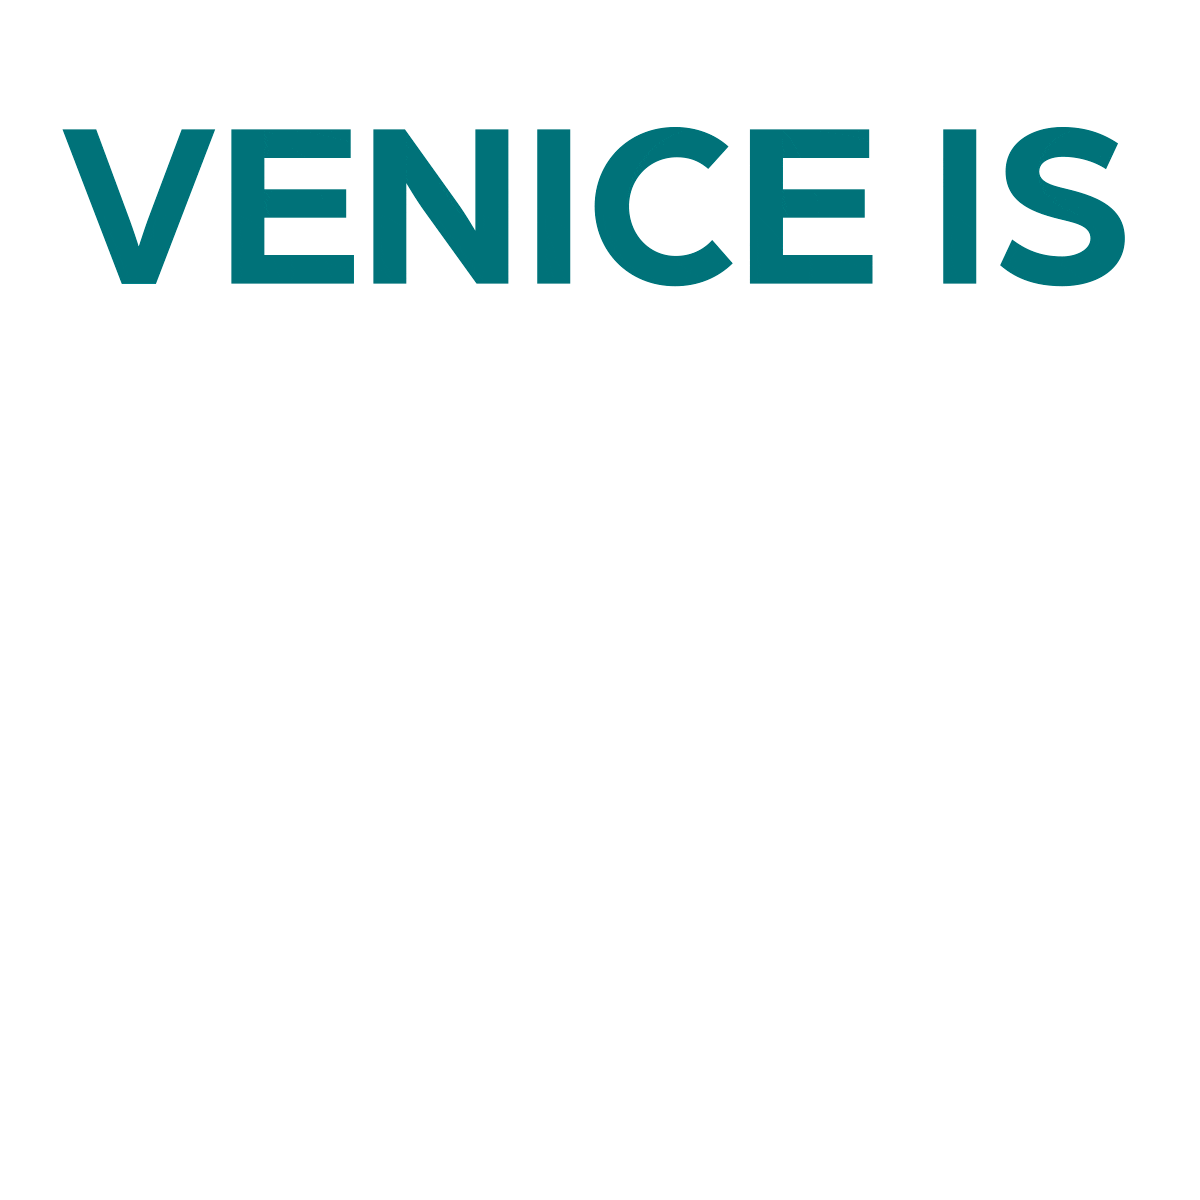 Venicebaywebagency Sticker by Venice Bay